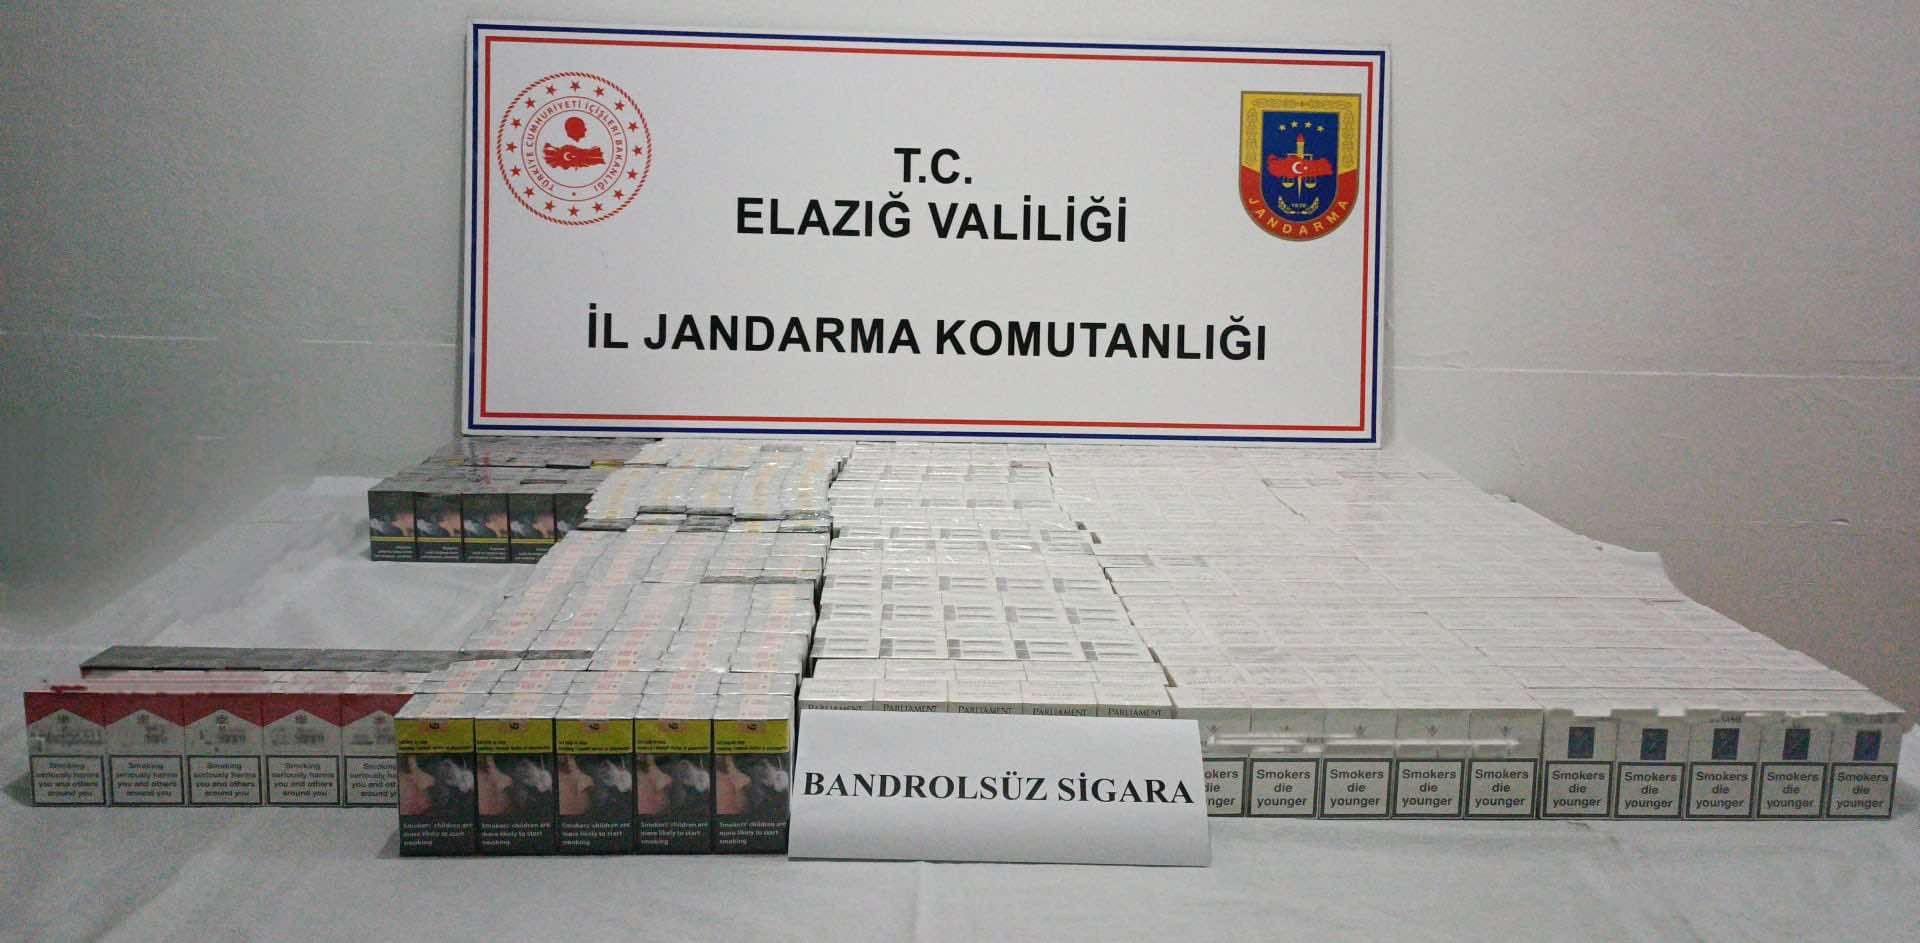 Elazığ'da binlerce paket kaçak sigara ele geçirildi